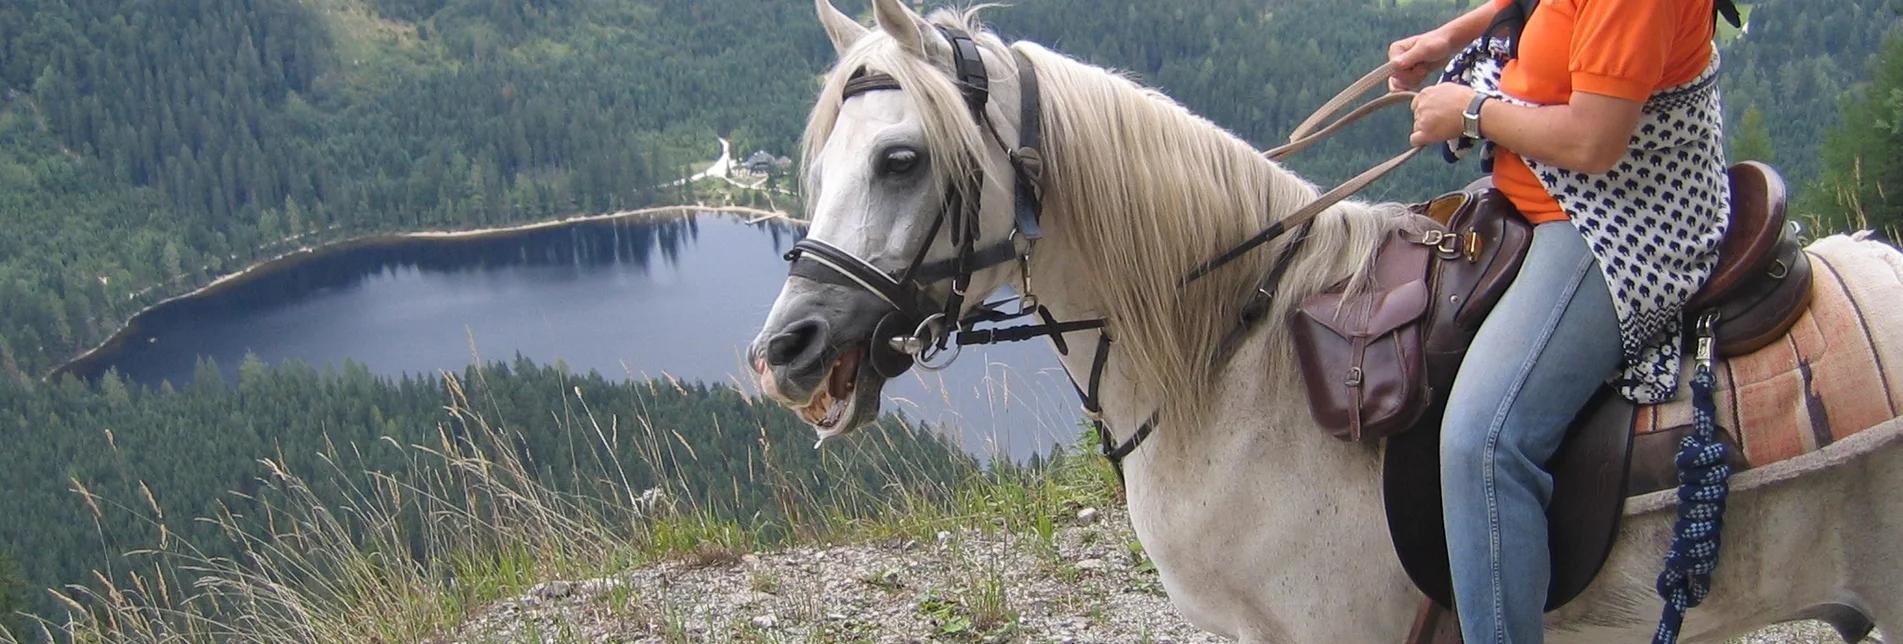 Horse Riding Kainisch bridle path - Sillstraße - Lake Ödensee - Touren-Impression #1 | © Ausseerland